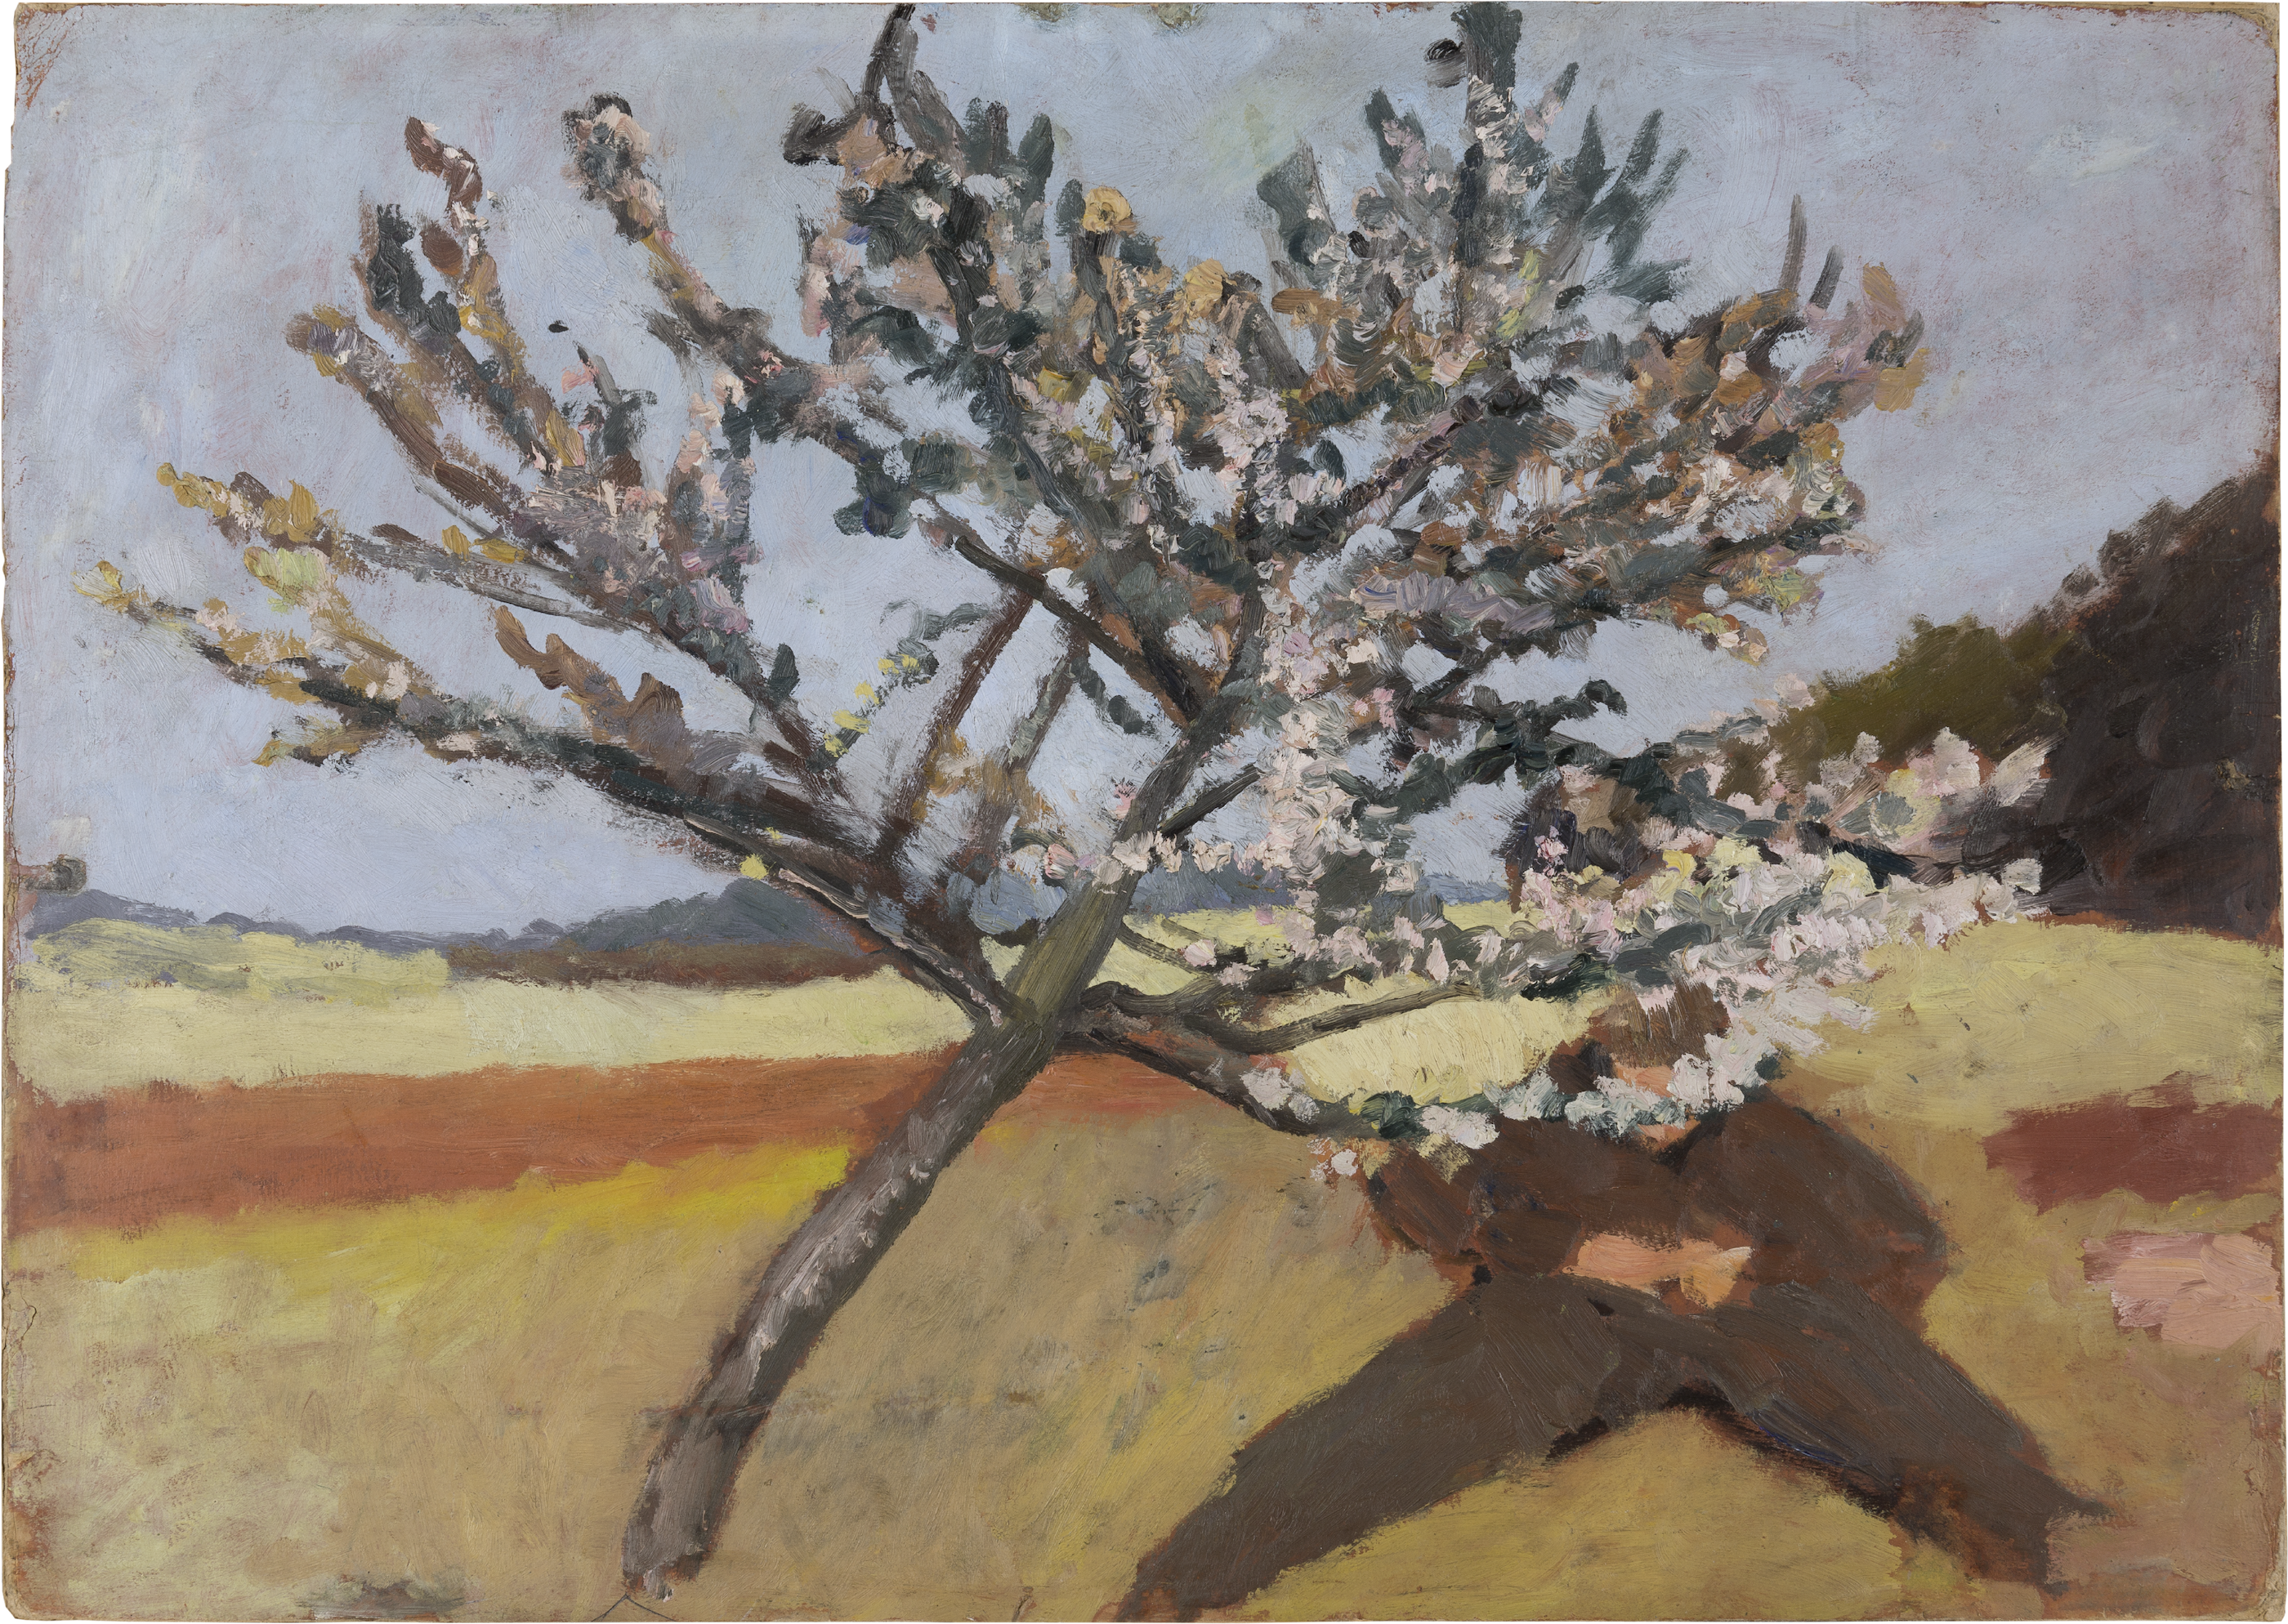 활짝 핀 나무 아래 누워있는 남자(Man Lying Beneath a Blossoming Tree) by Paula Modersohn-Becker - 1903 - 52 x 74 cm 